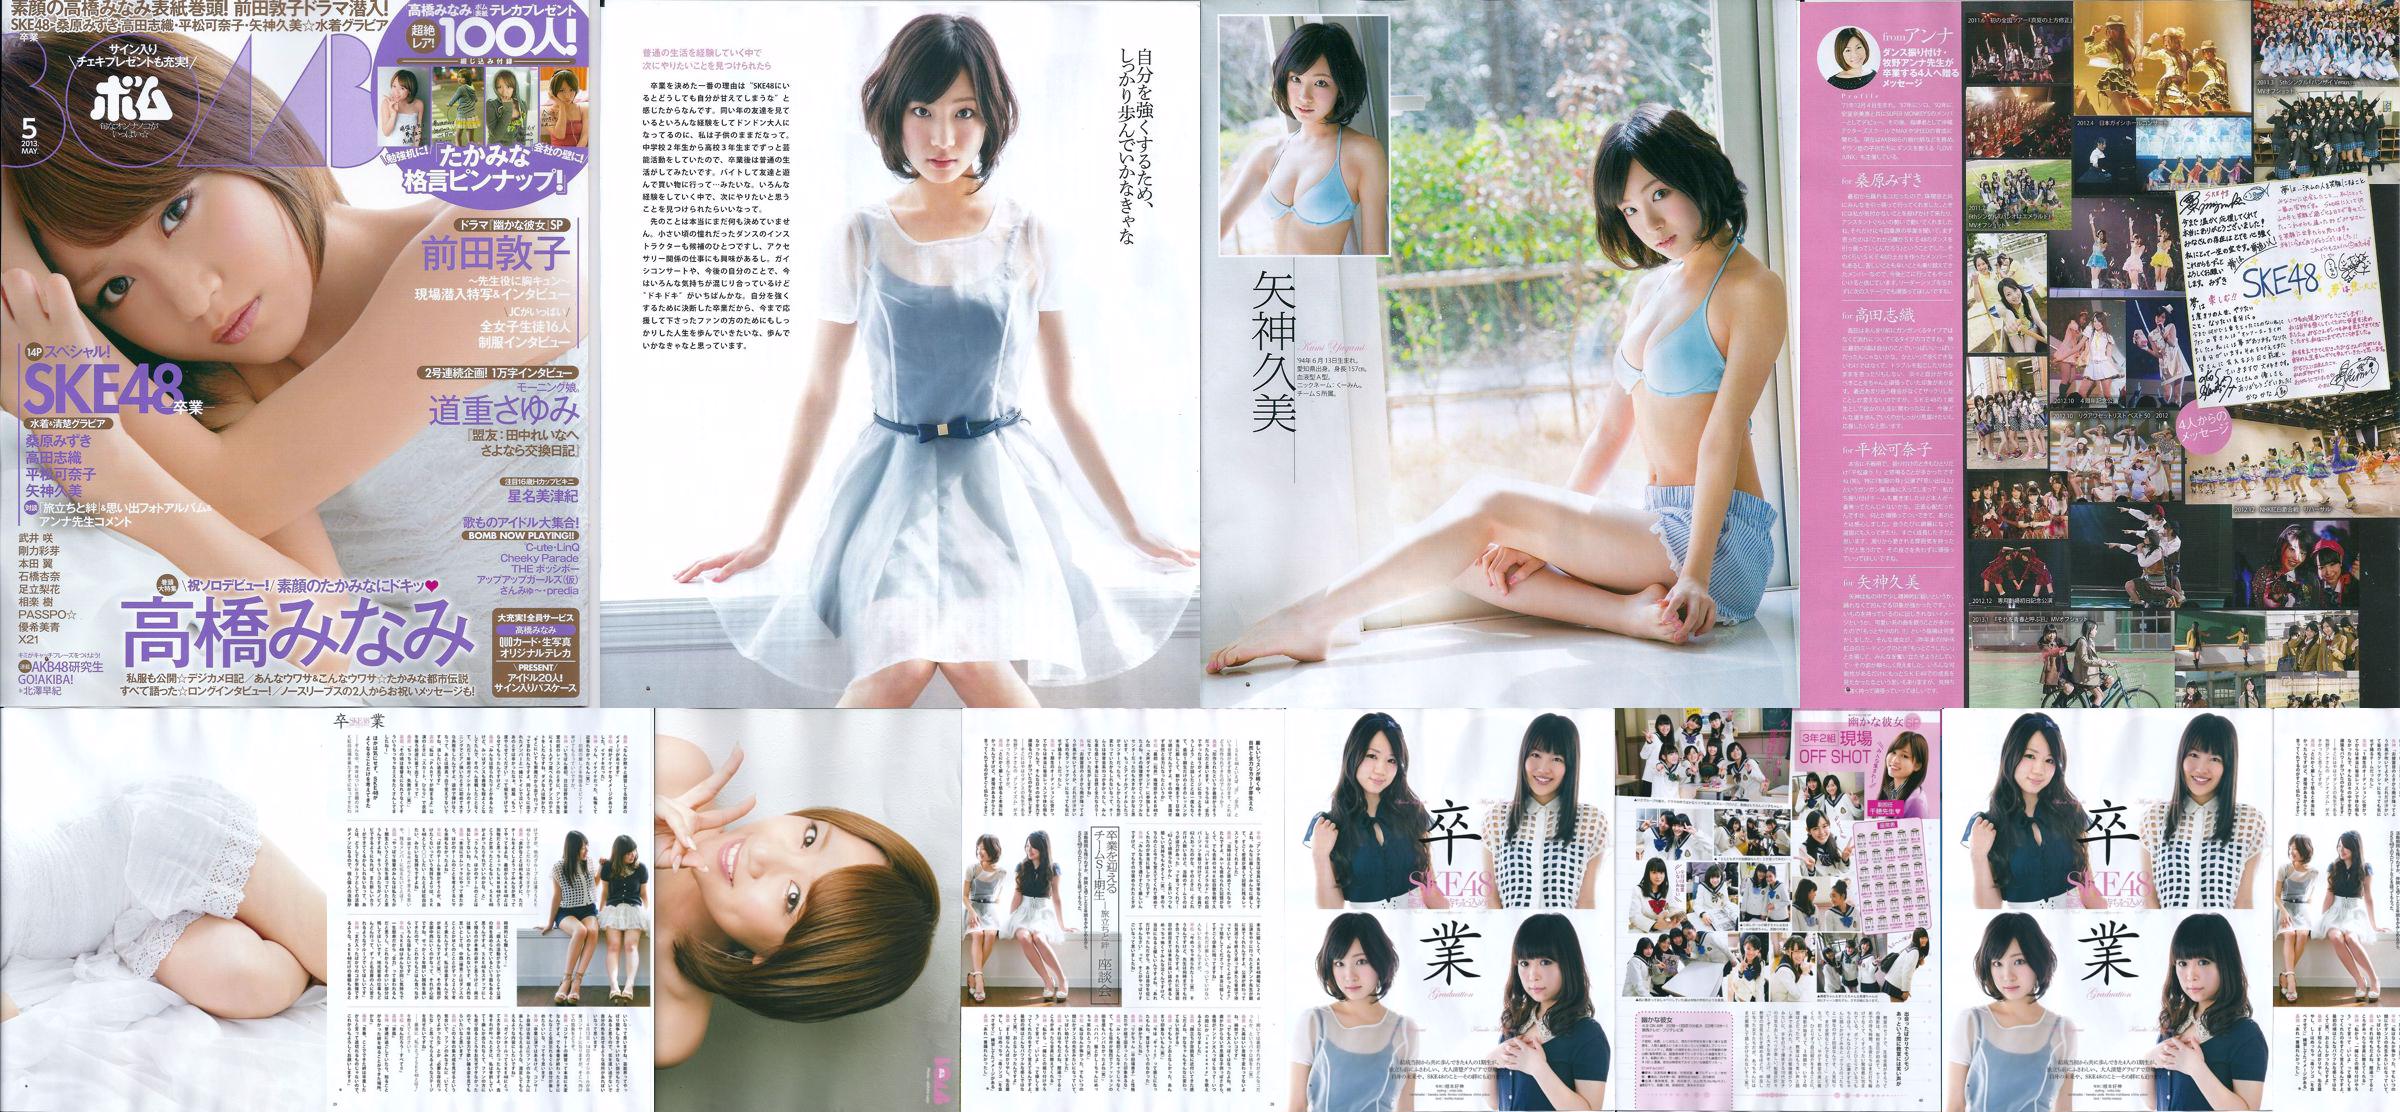 [Bomb Magazine] 2013 No.05 Kumi Yagami Minami Takahashi Atsuko Maeda Foto No.8d746b Página 1